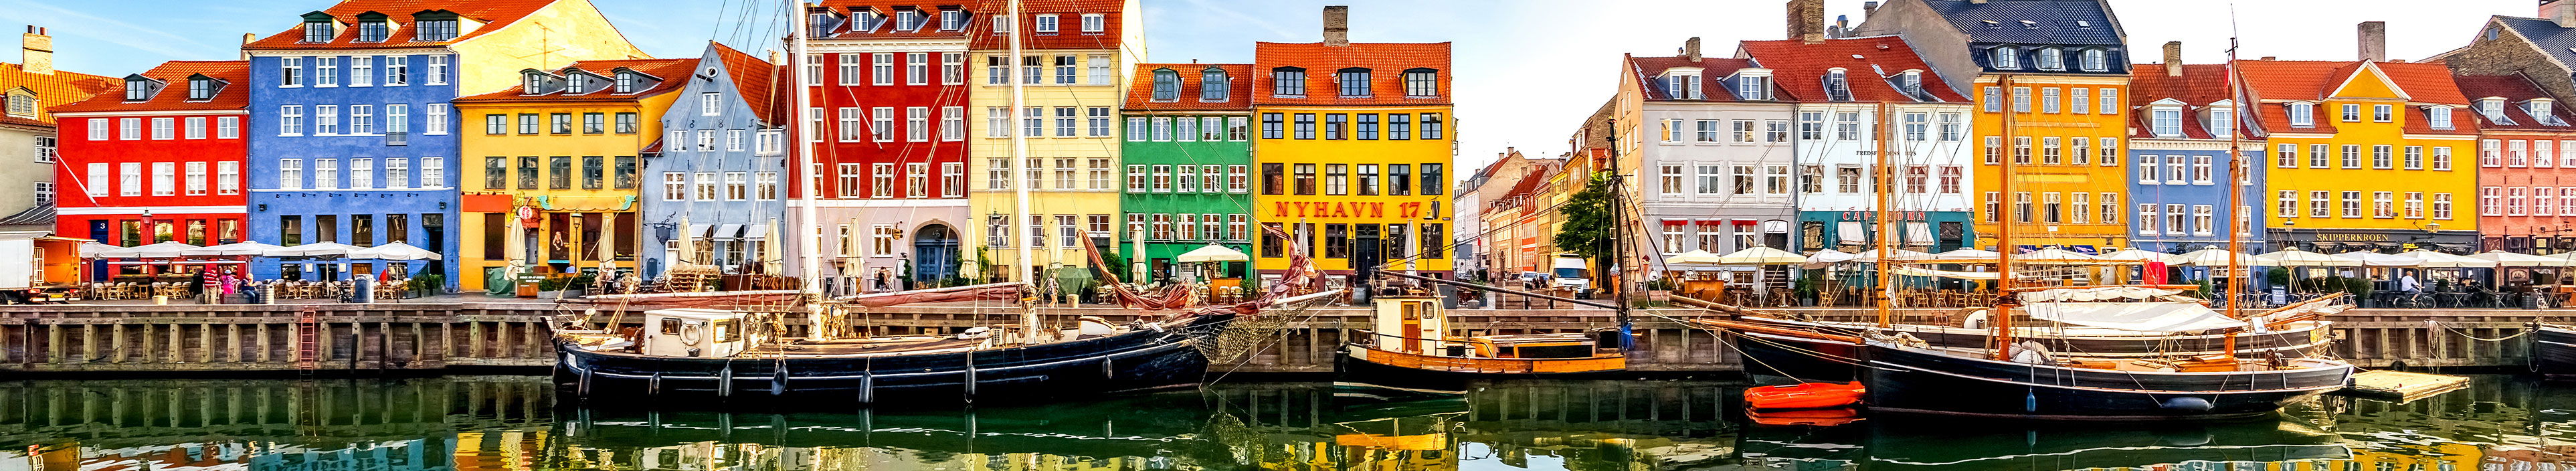 Urlaub Dänemark. Bunte Häuserreihe am Hafen.